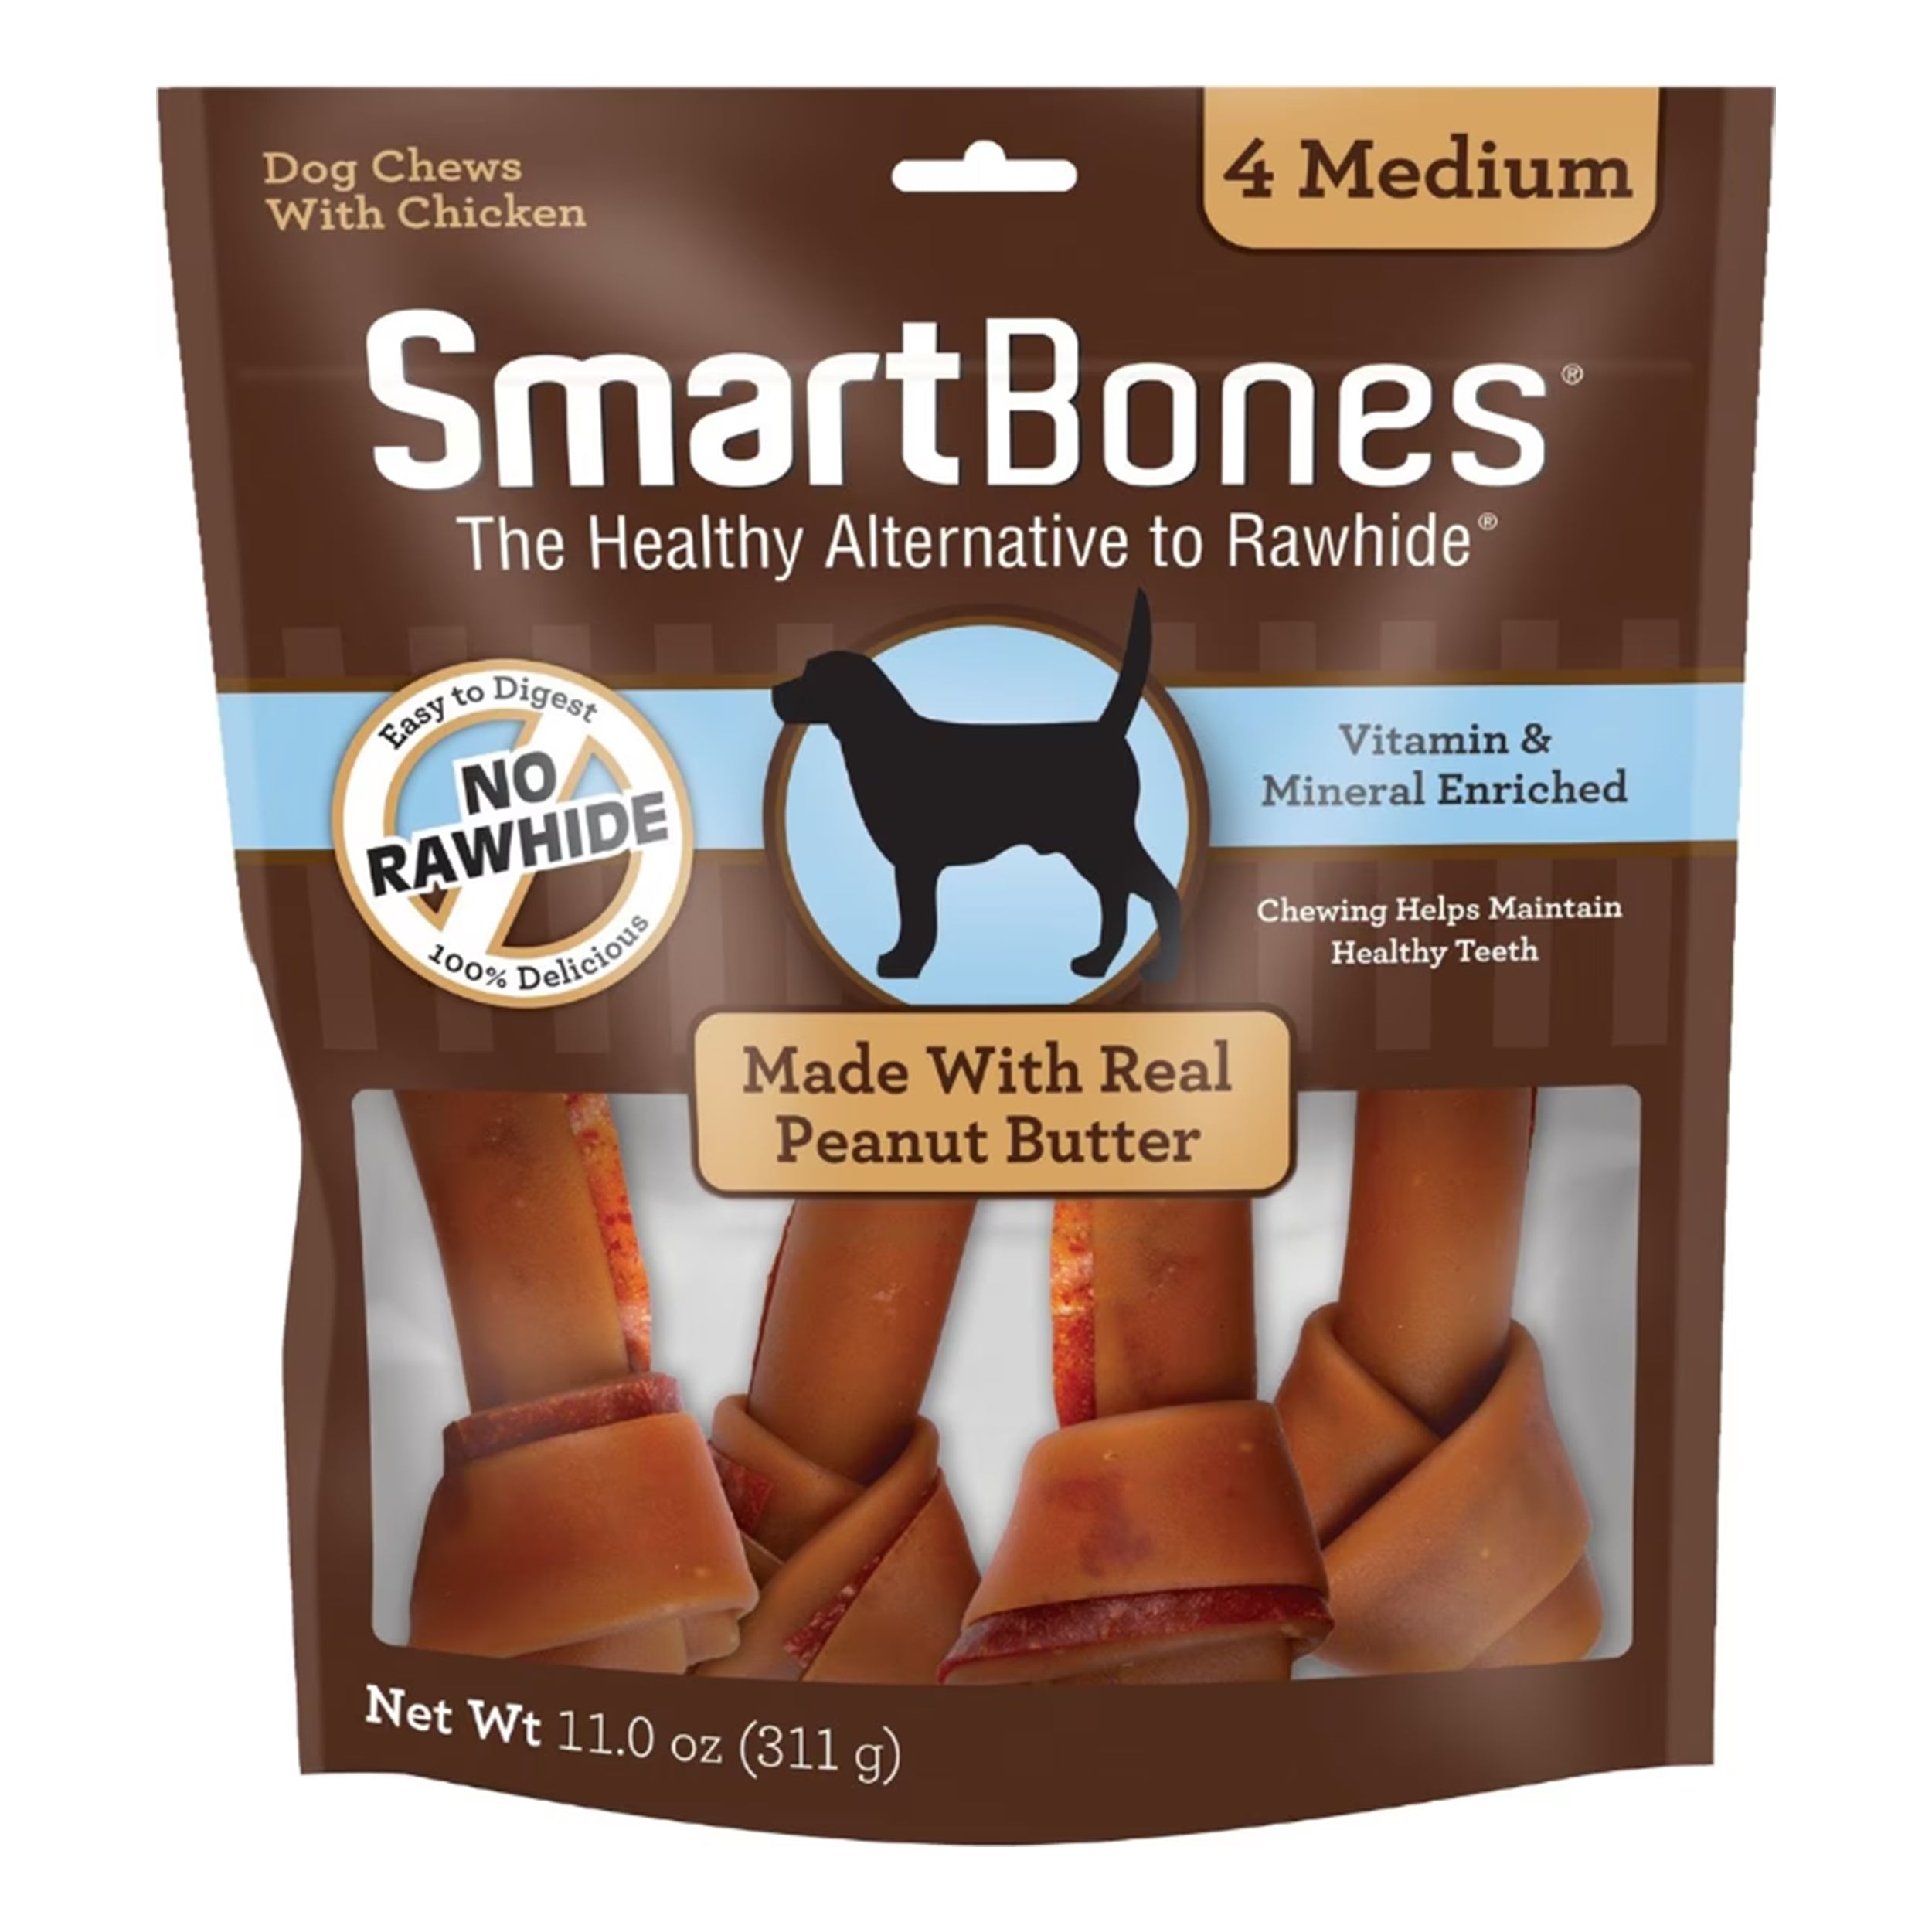 SmartBones Medium Peanut Butter Chew Bones Dog Treats, 4 Count